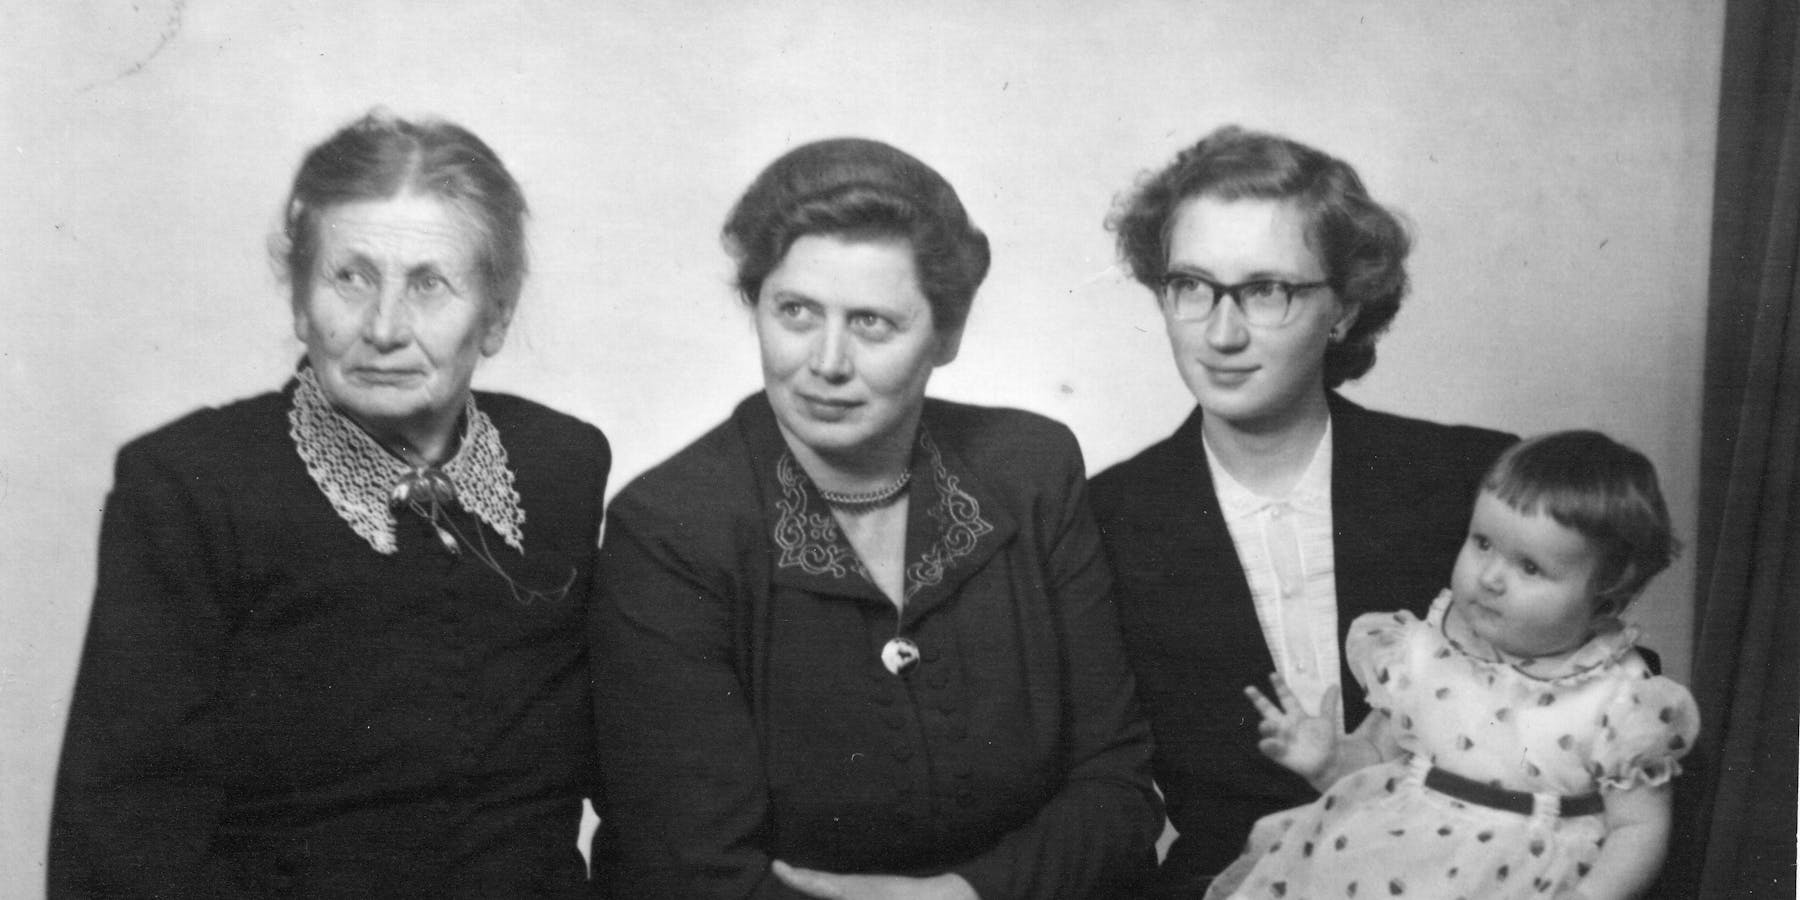 Fire generasjonar hos fotografen: Til venstre oldemor Mina Reidarson, bestemor Ragna Osmundsen, og Kari Ness, med dottera Ragnhild Elise, på fanget. Den gongen var det ingen som visste at veslejenta skulle bli jordmor akkurat som oldemor si, Mina.